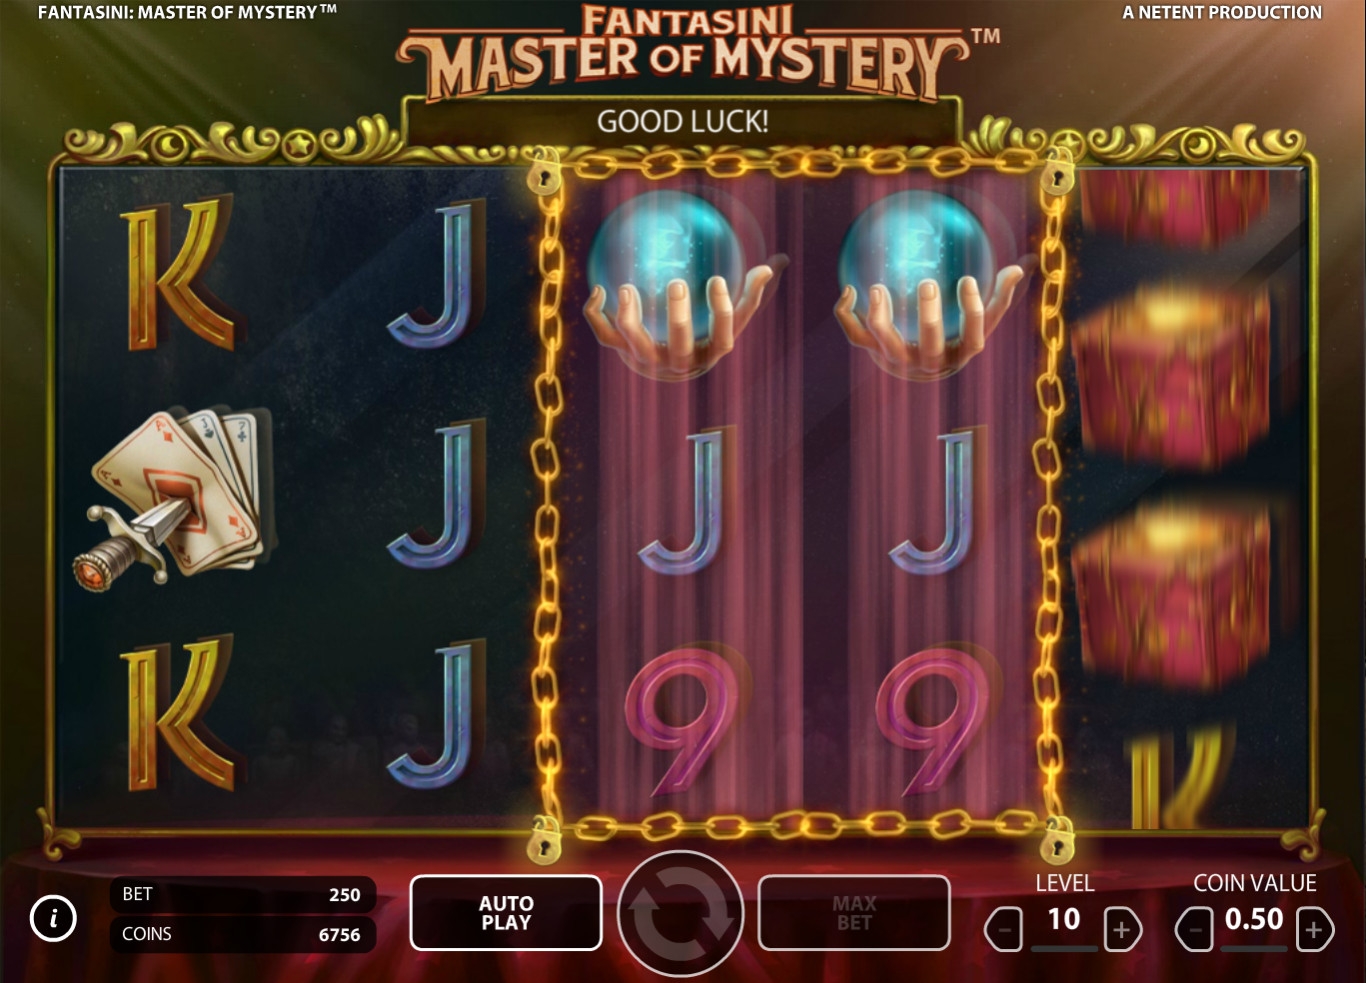 Fantasini: Master of Mystery (Fantasini: Master of Mystery) from category Slots